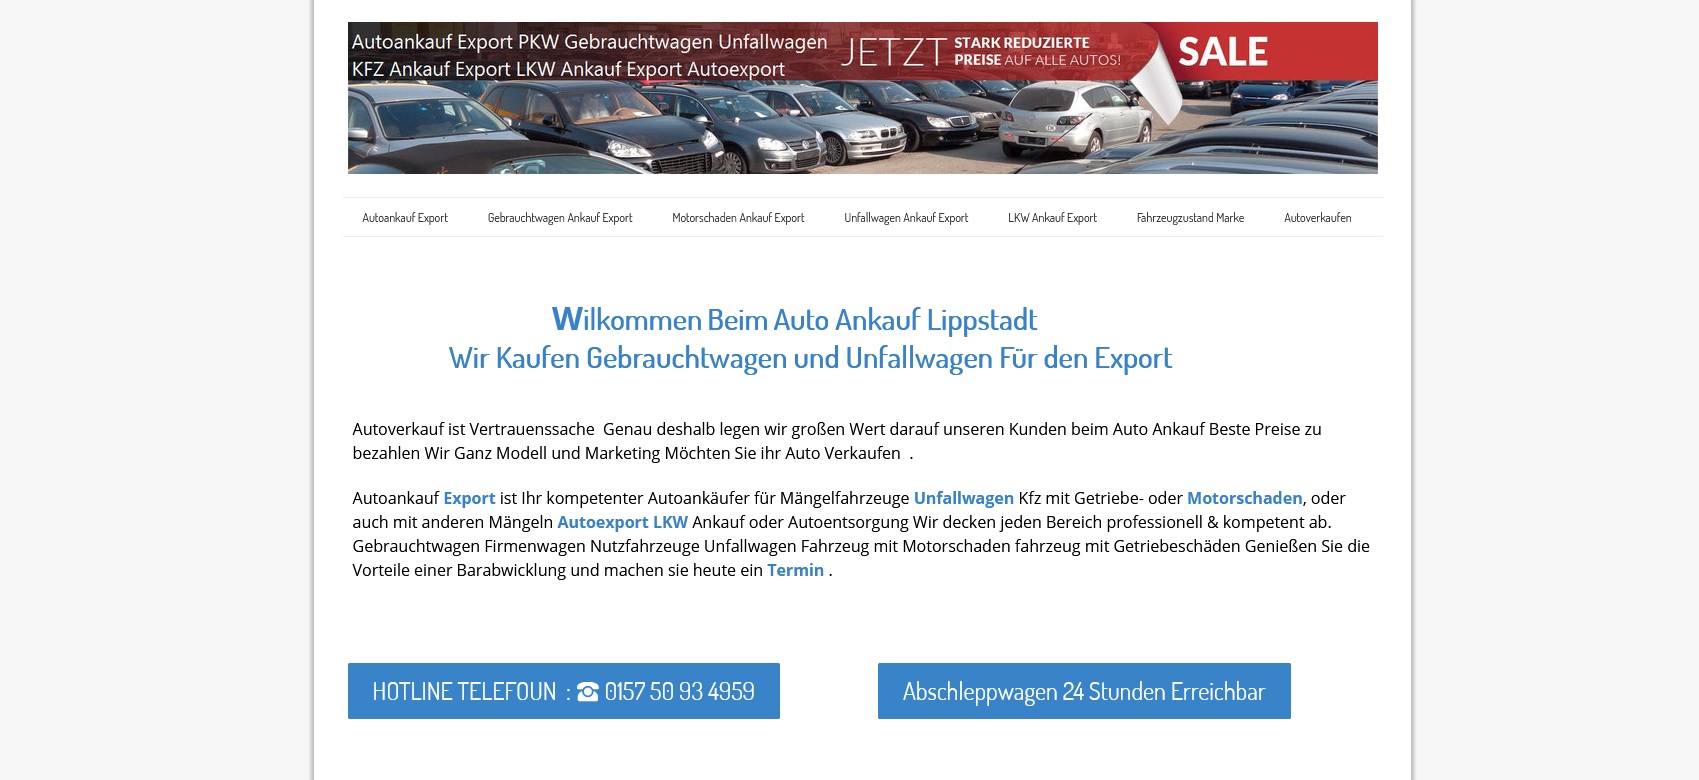 Kfz-Ankauf-Export Lippstadt kauft die Fahrzeuge definitiv “wie gesehen”